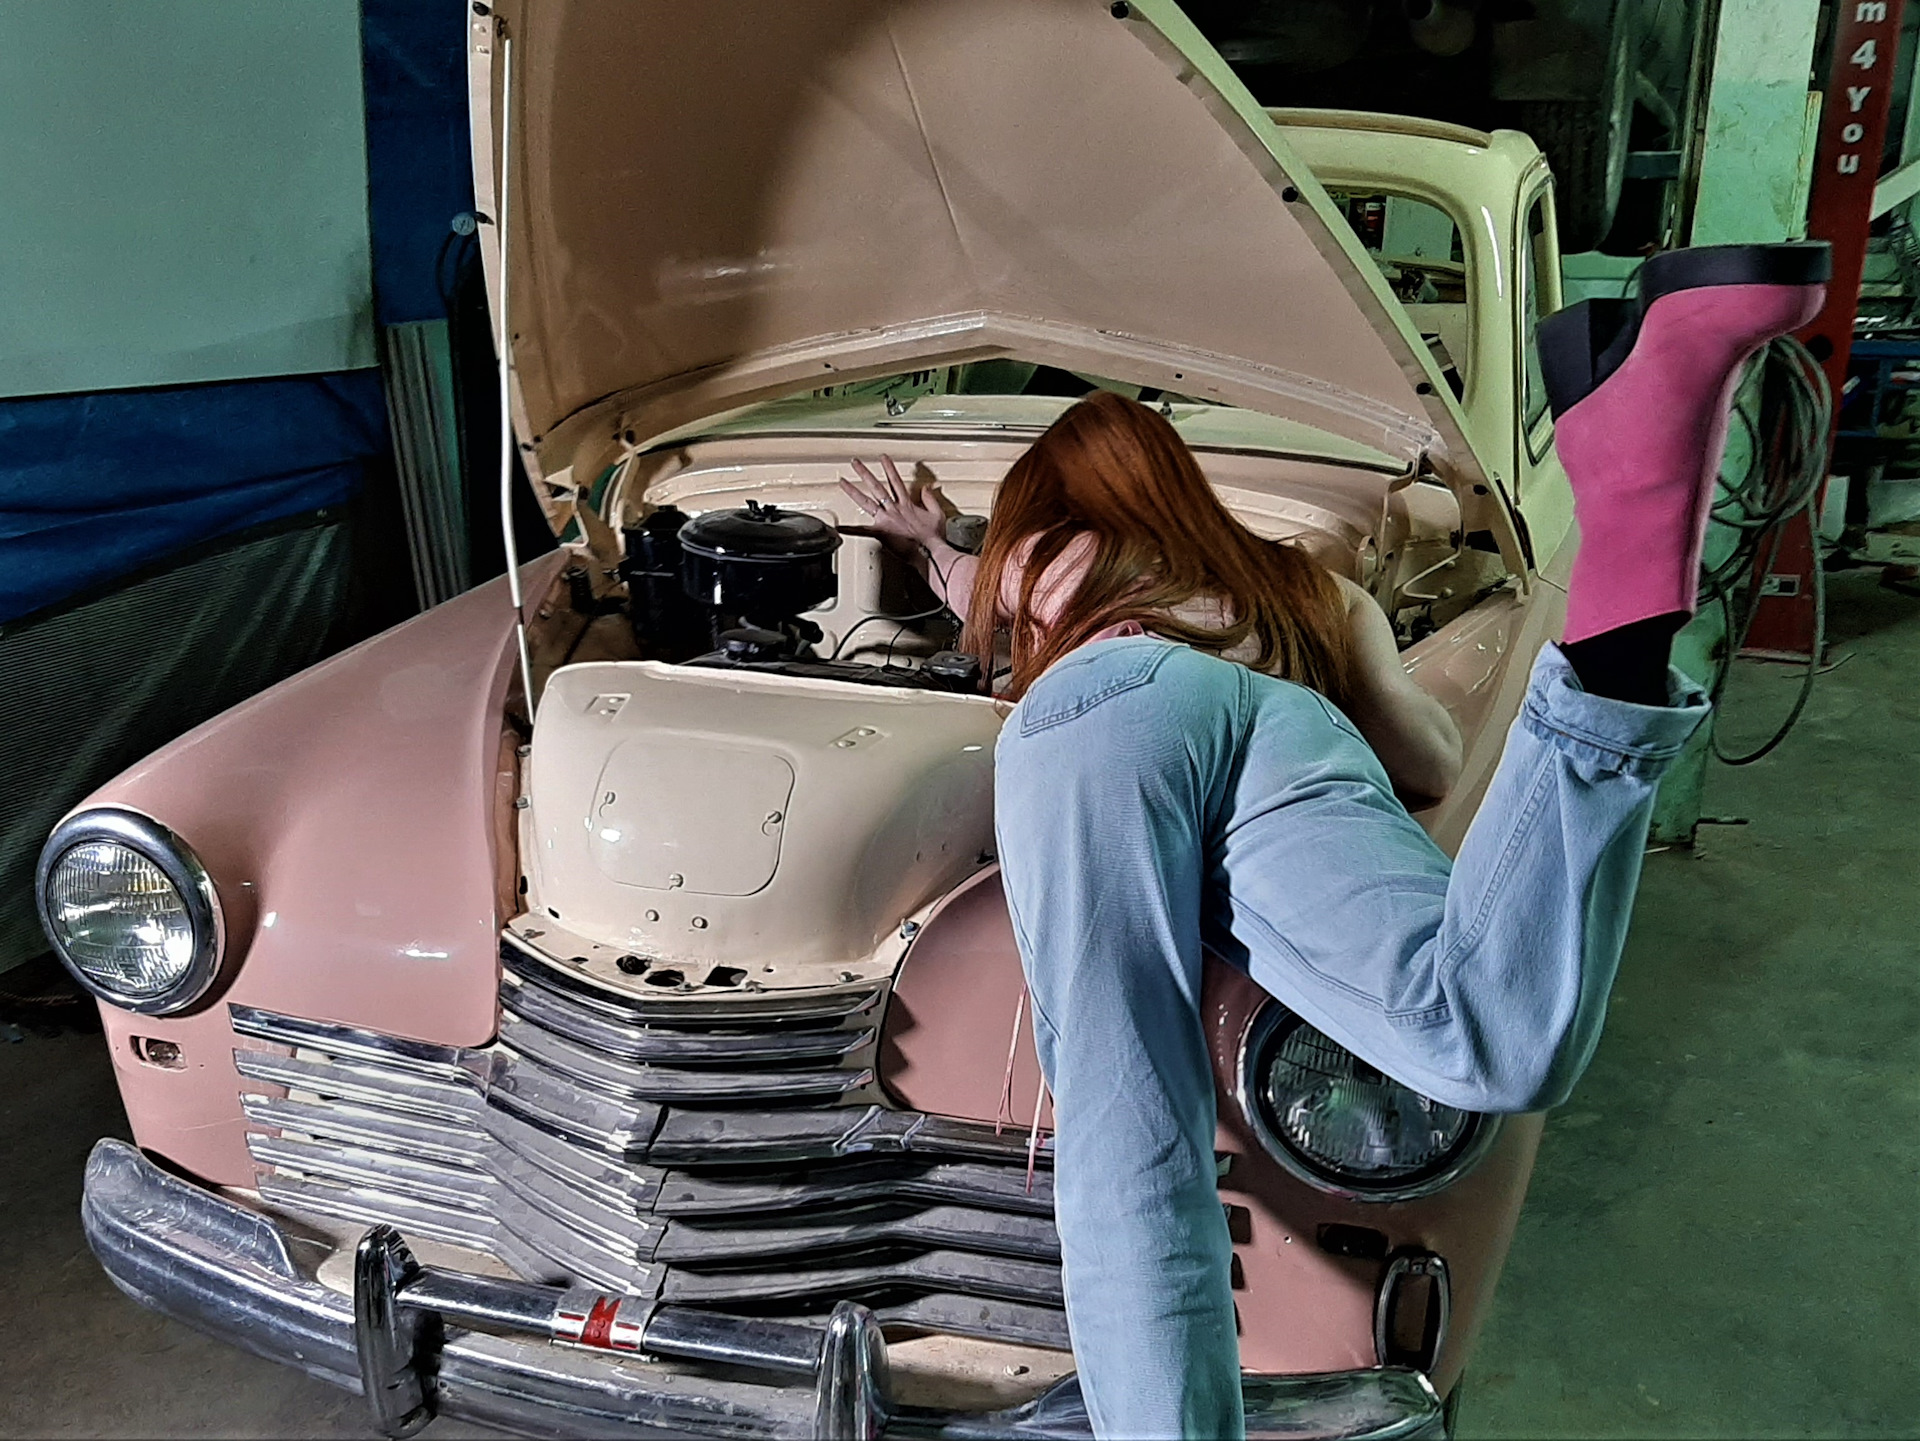 Sweetie fox чинит машину. Девушка ремонтирует машину. Девушка чинит машину. Машина сломалась. Мужик чинит машину.